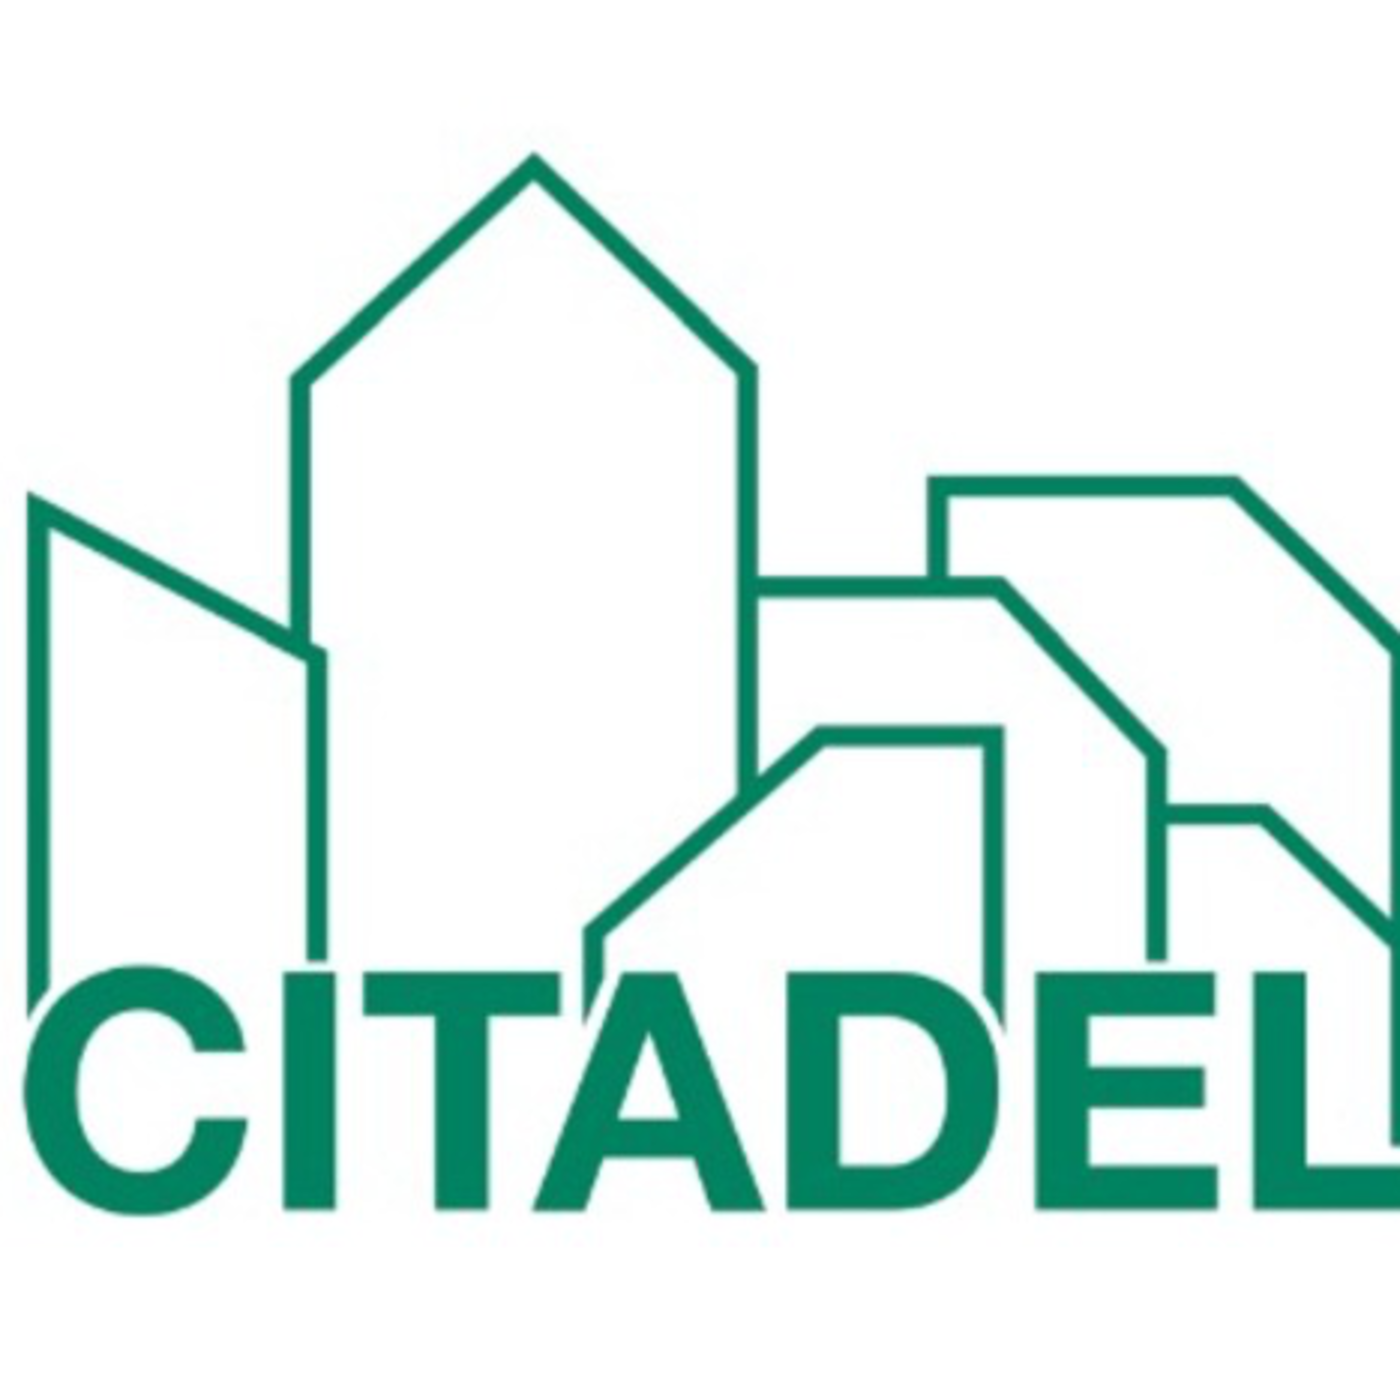 Citadel Podcast